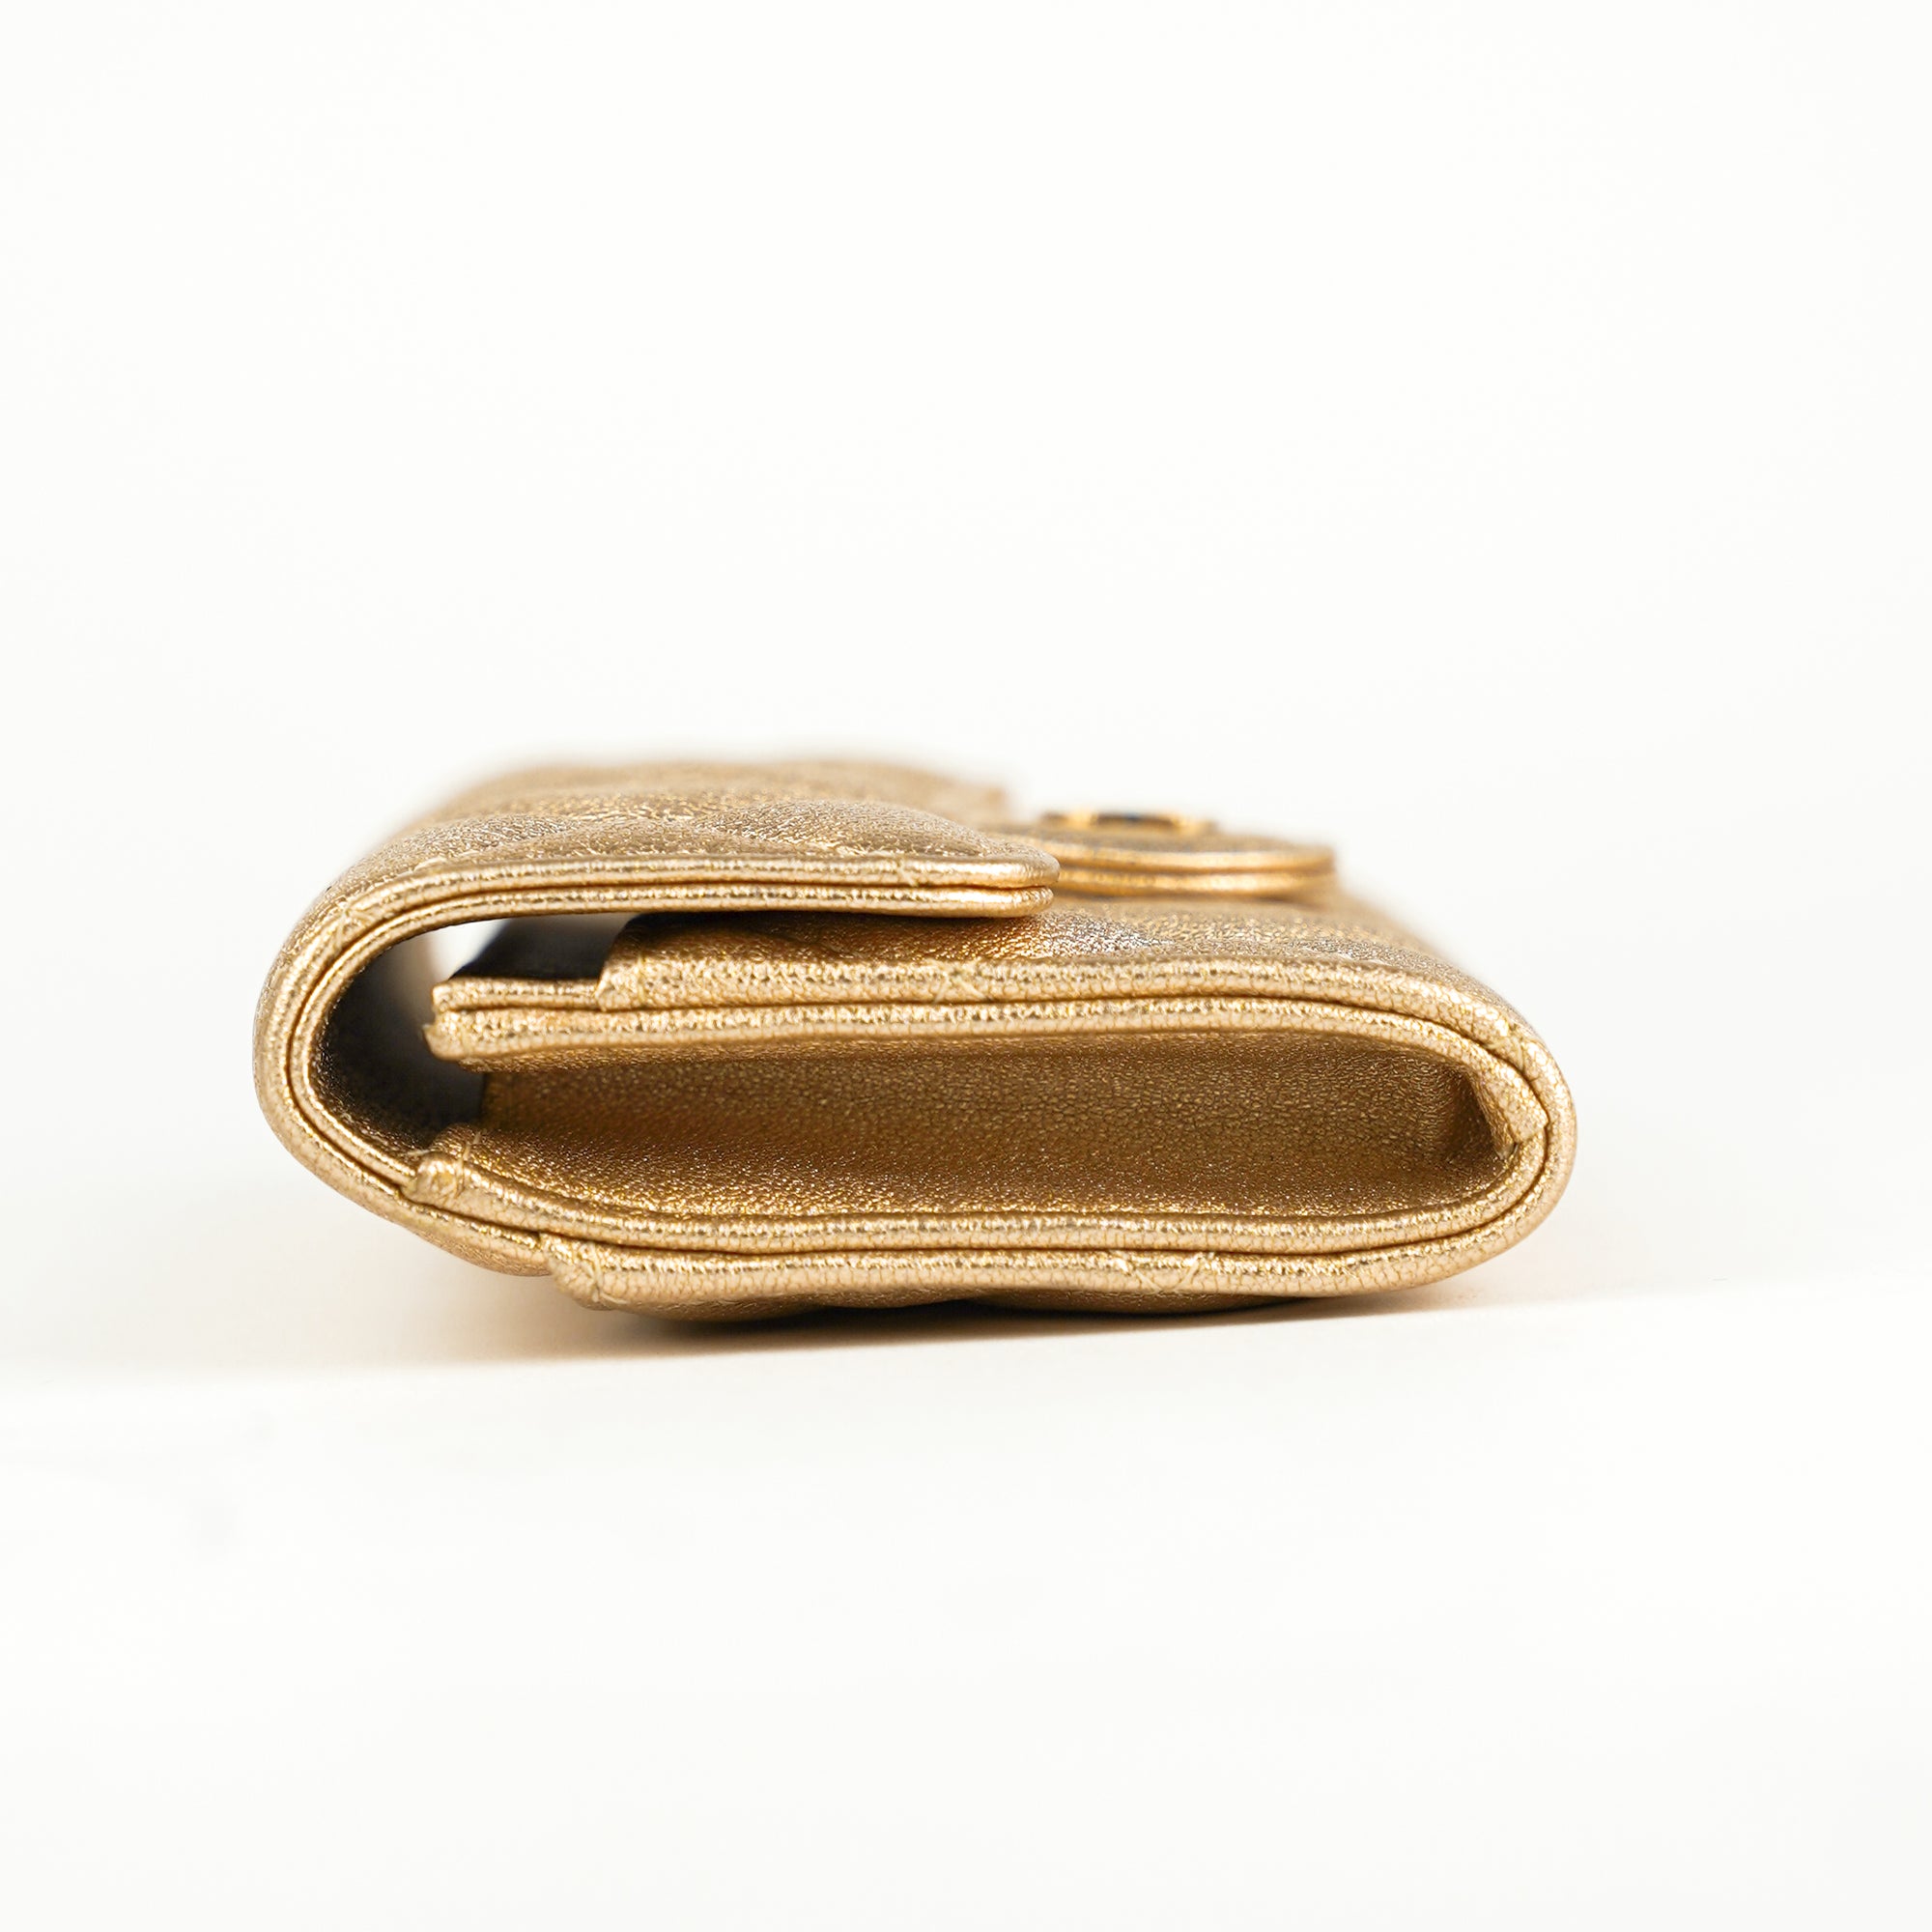 Chanel Zip Around Organizer Wallet Quilted Lambskin Large Metallic 2091844